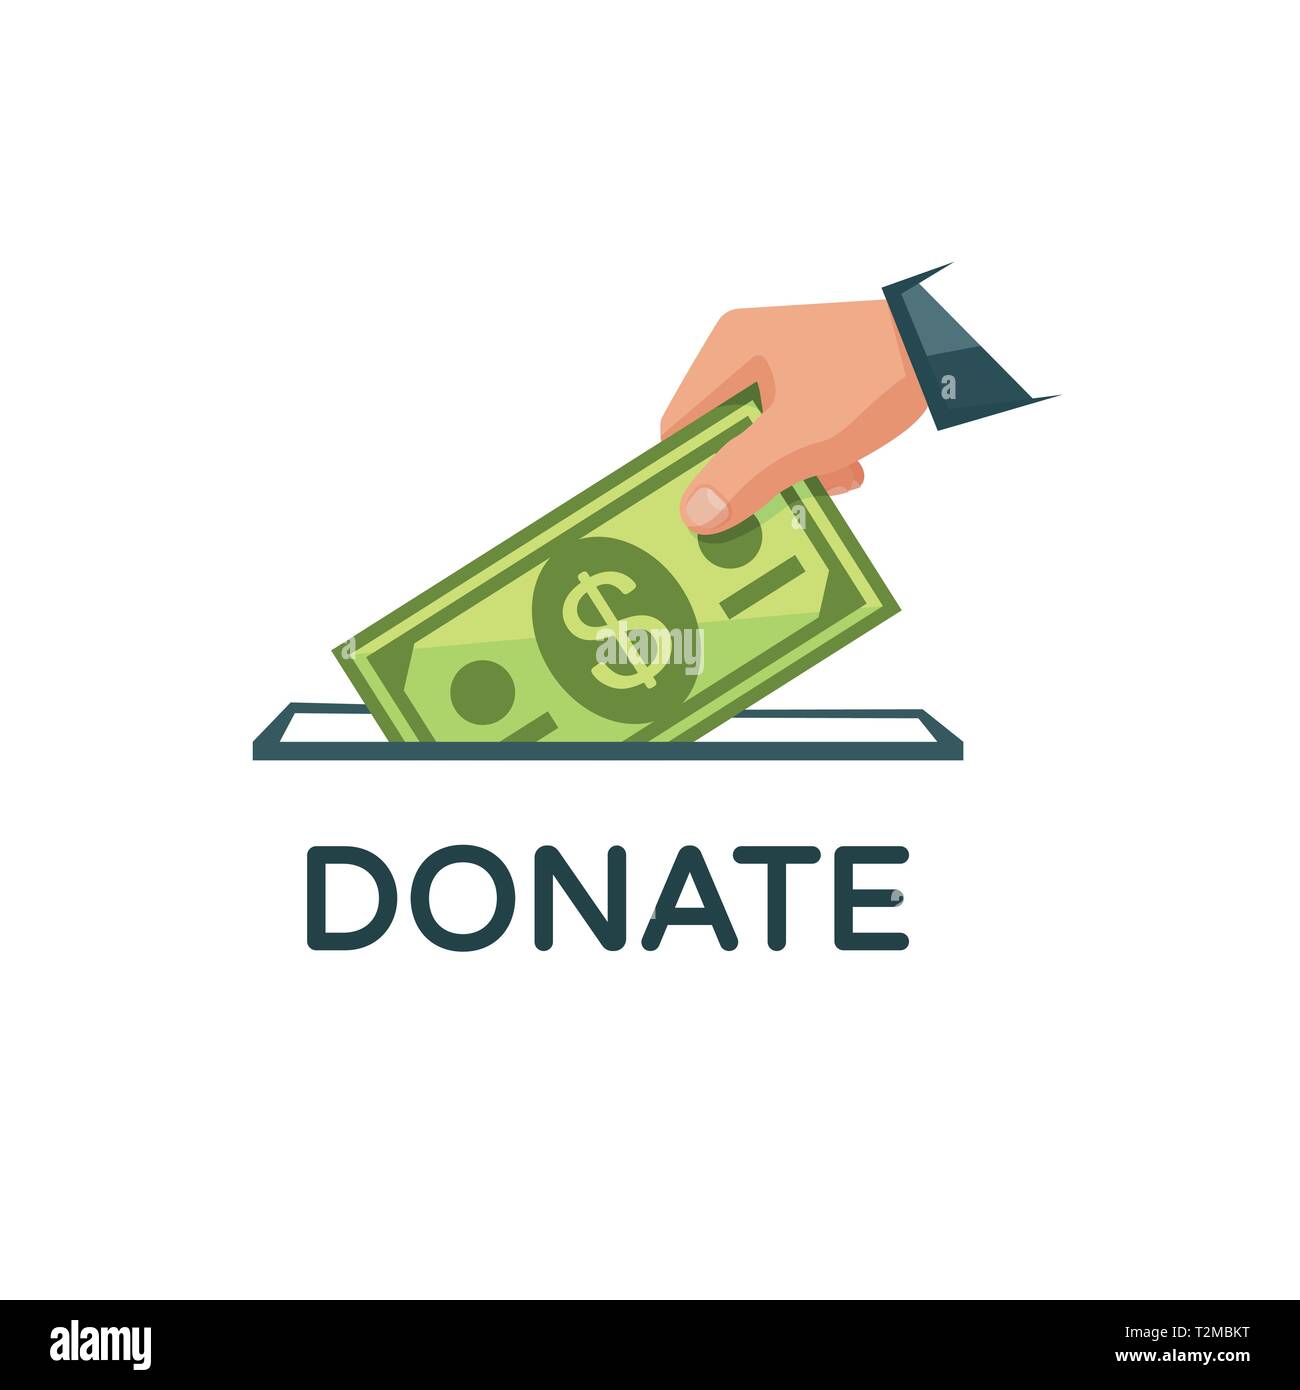 Spenden Sie Geld Vector Illustration. Nächstenliebe, spende Konzept. Hand setzt eine Banknote in eine Spendenbox. Eps 10. Stock Vektor